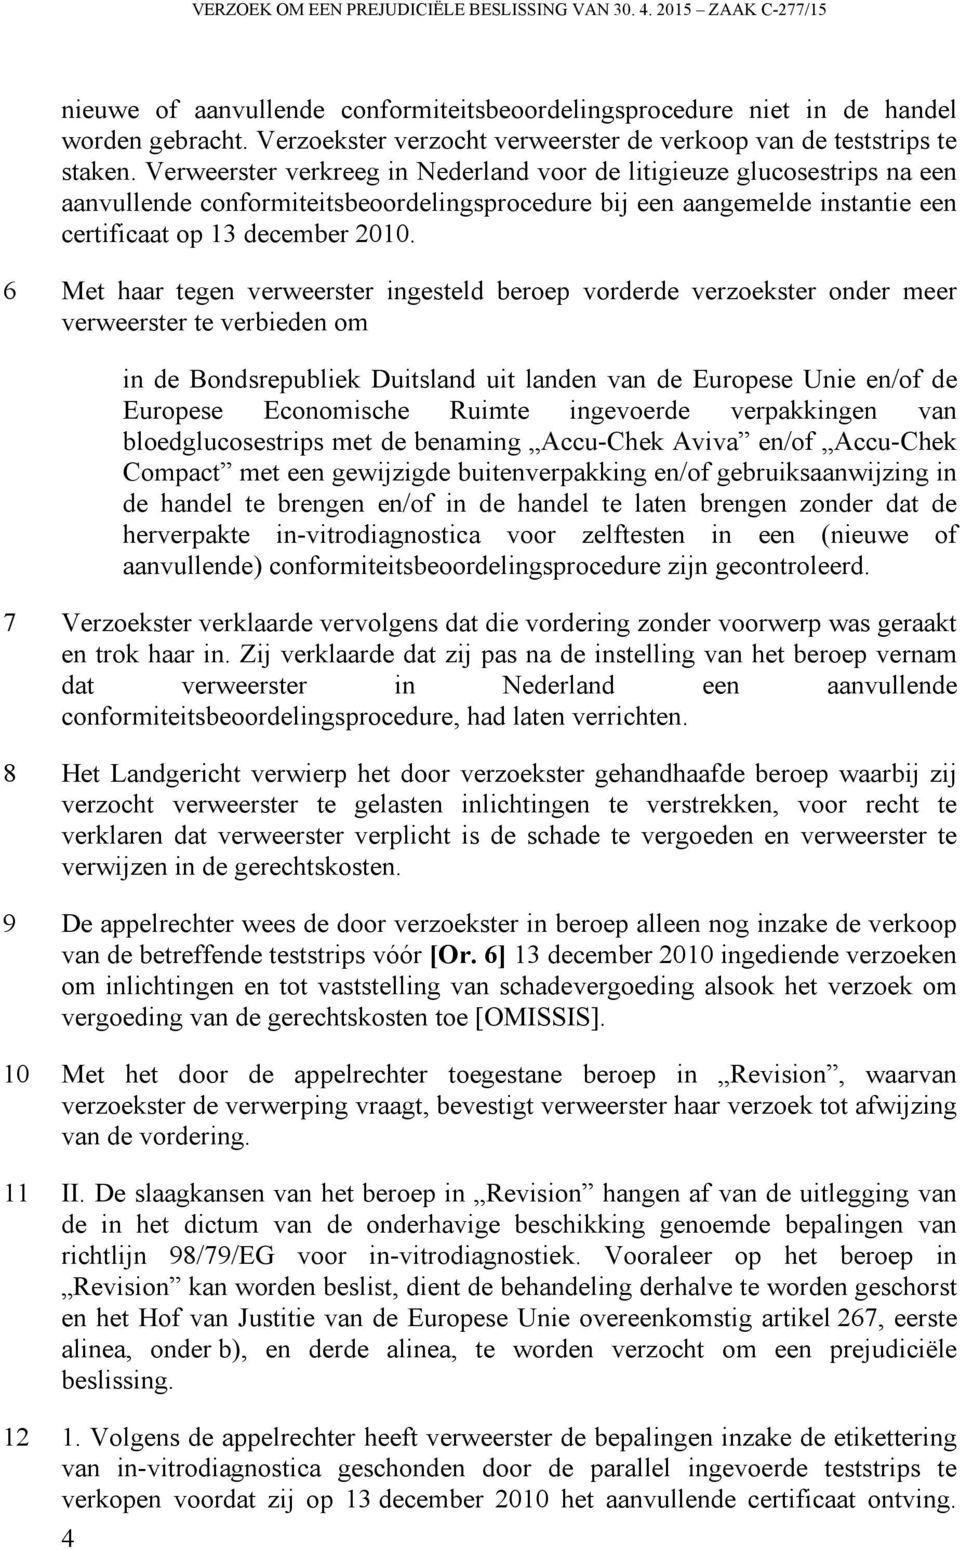 Verweerster verkreeg in Nederland voor de litigieuze glucosestrips na een aanvullende conformiteitsbeoordelingsprocedure bij een aangemelde instantie een certificaat op 13 december 2010.